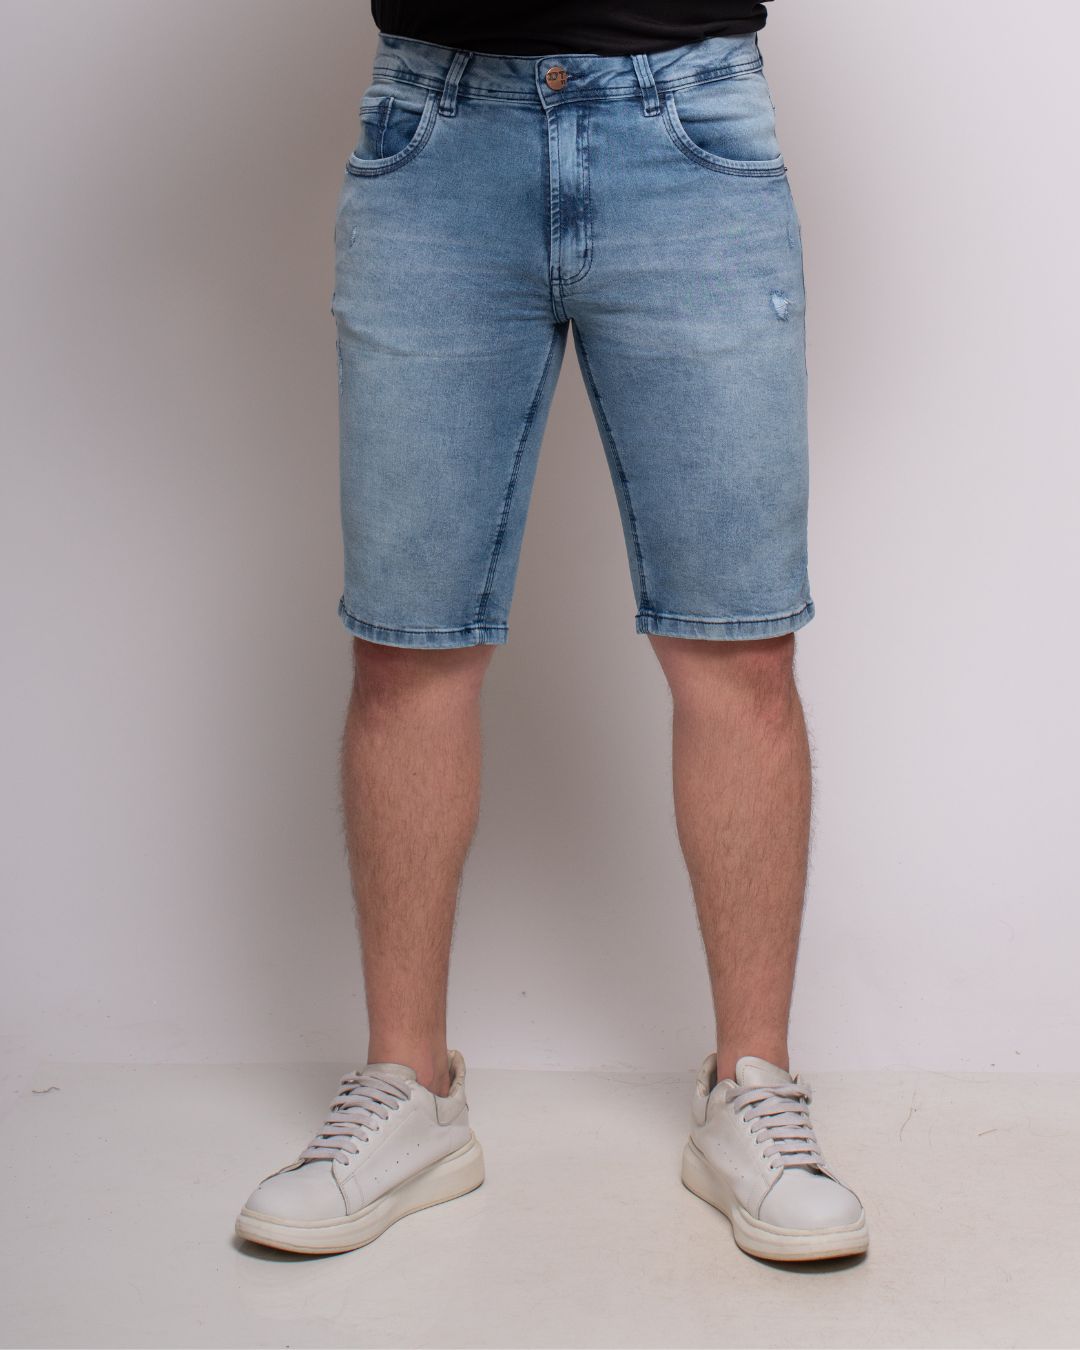 calça jeans masculina slim guitta rio 500 8740171